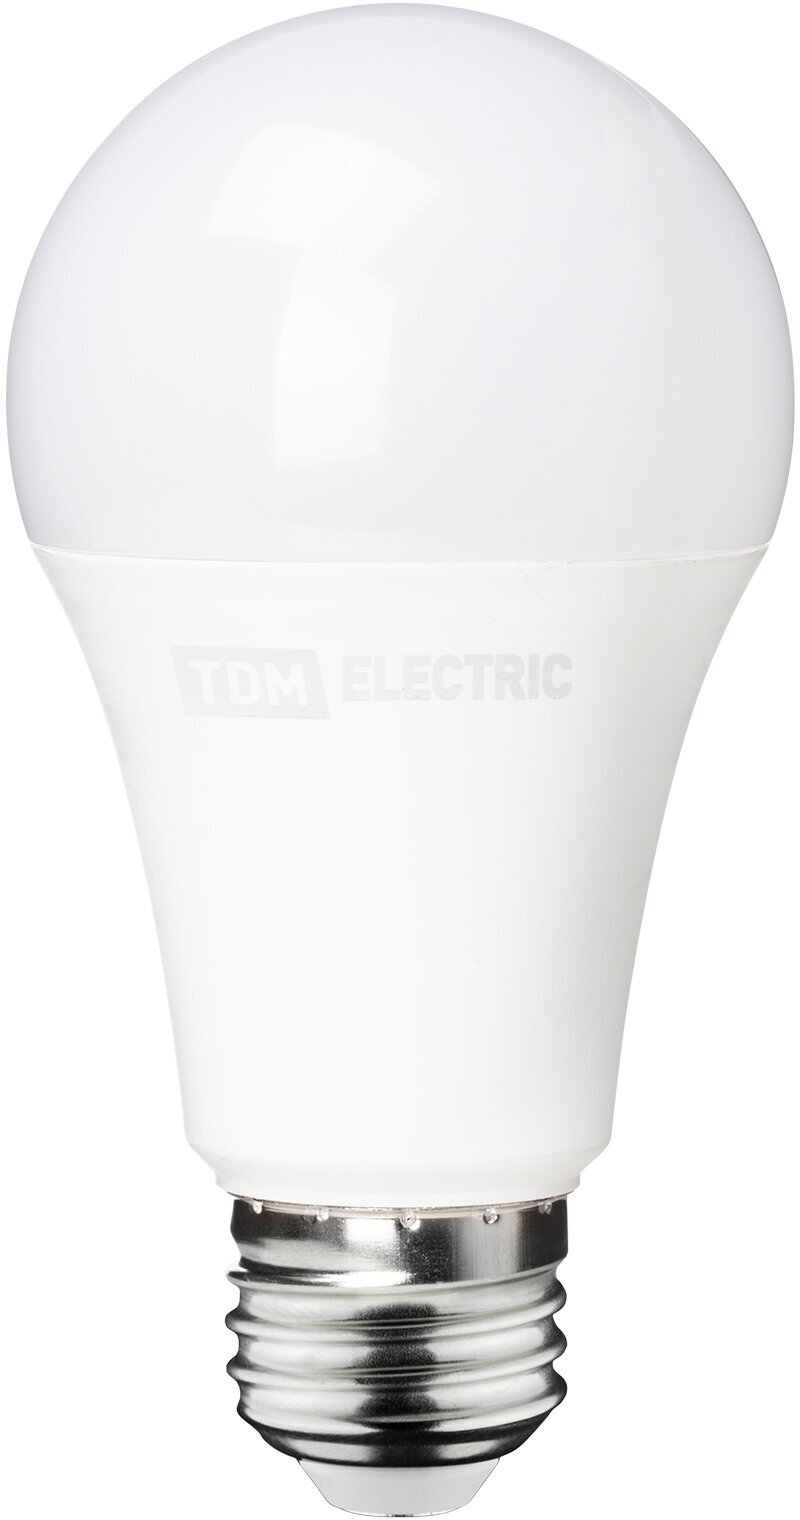 Лампа светодиодная низковольтная МО A60 11 Вт, 24-48 В, 4000 К TDM